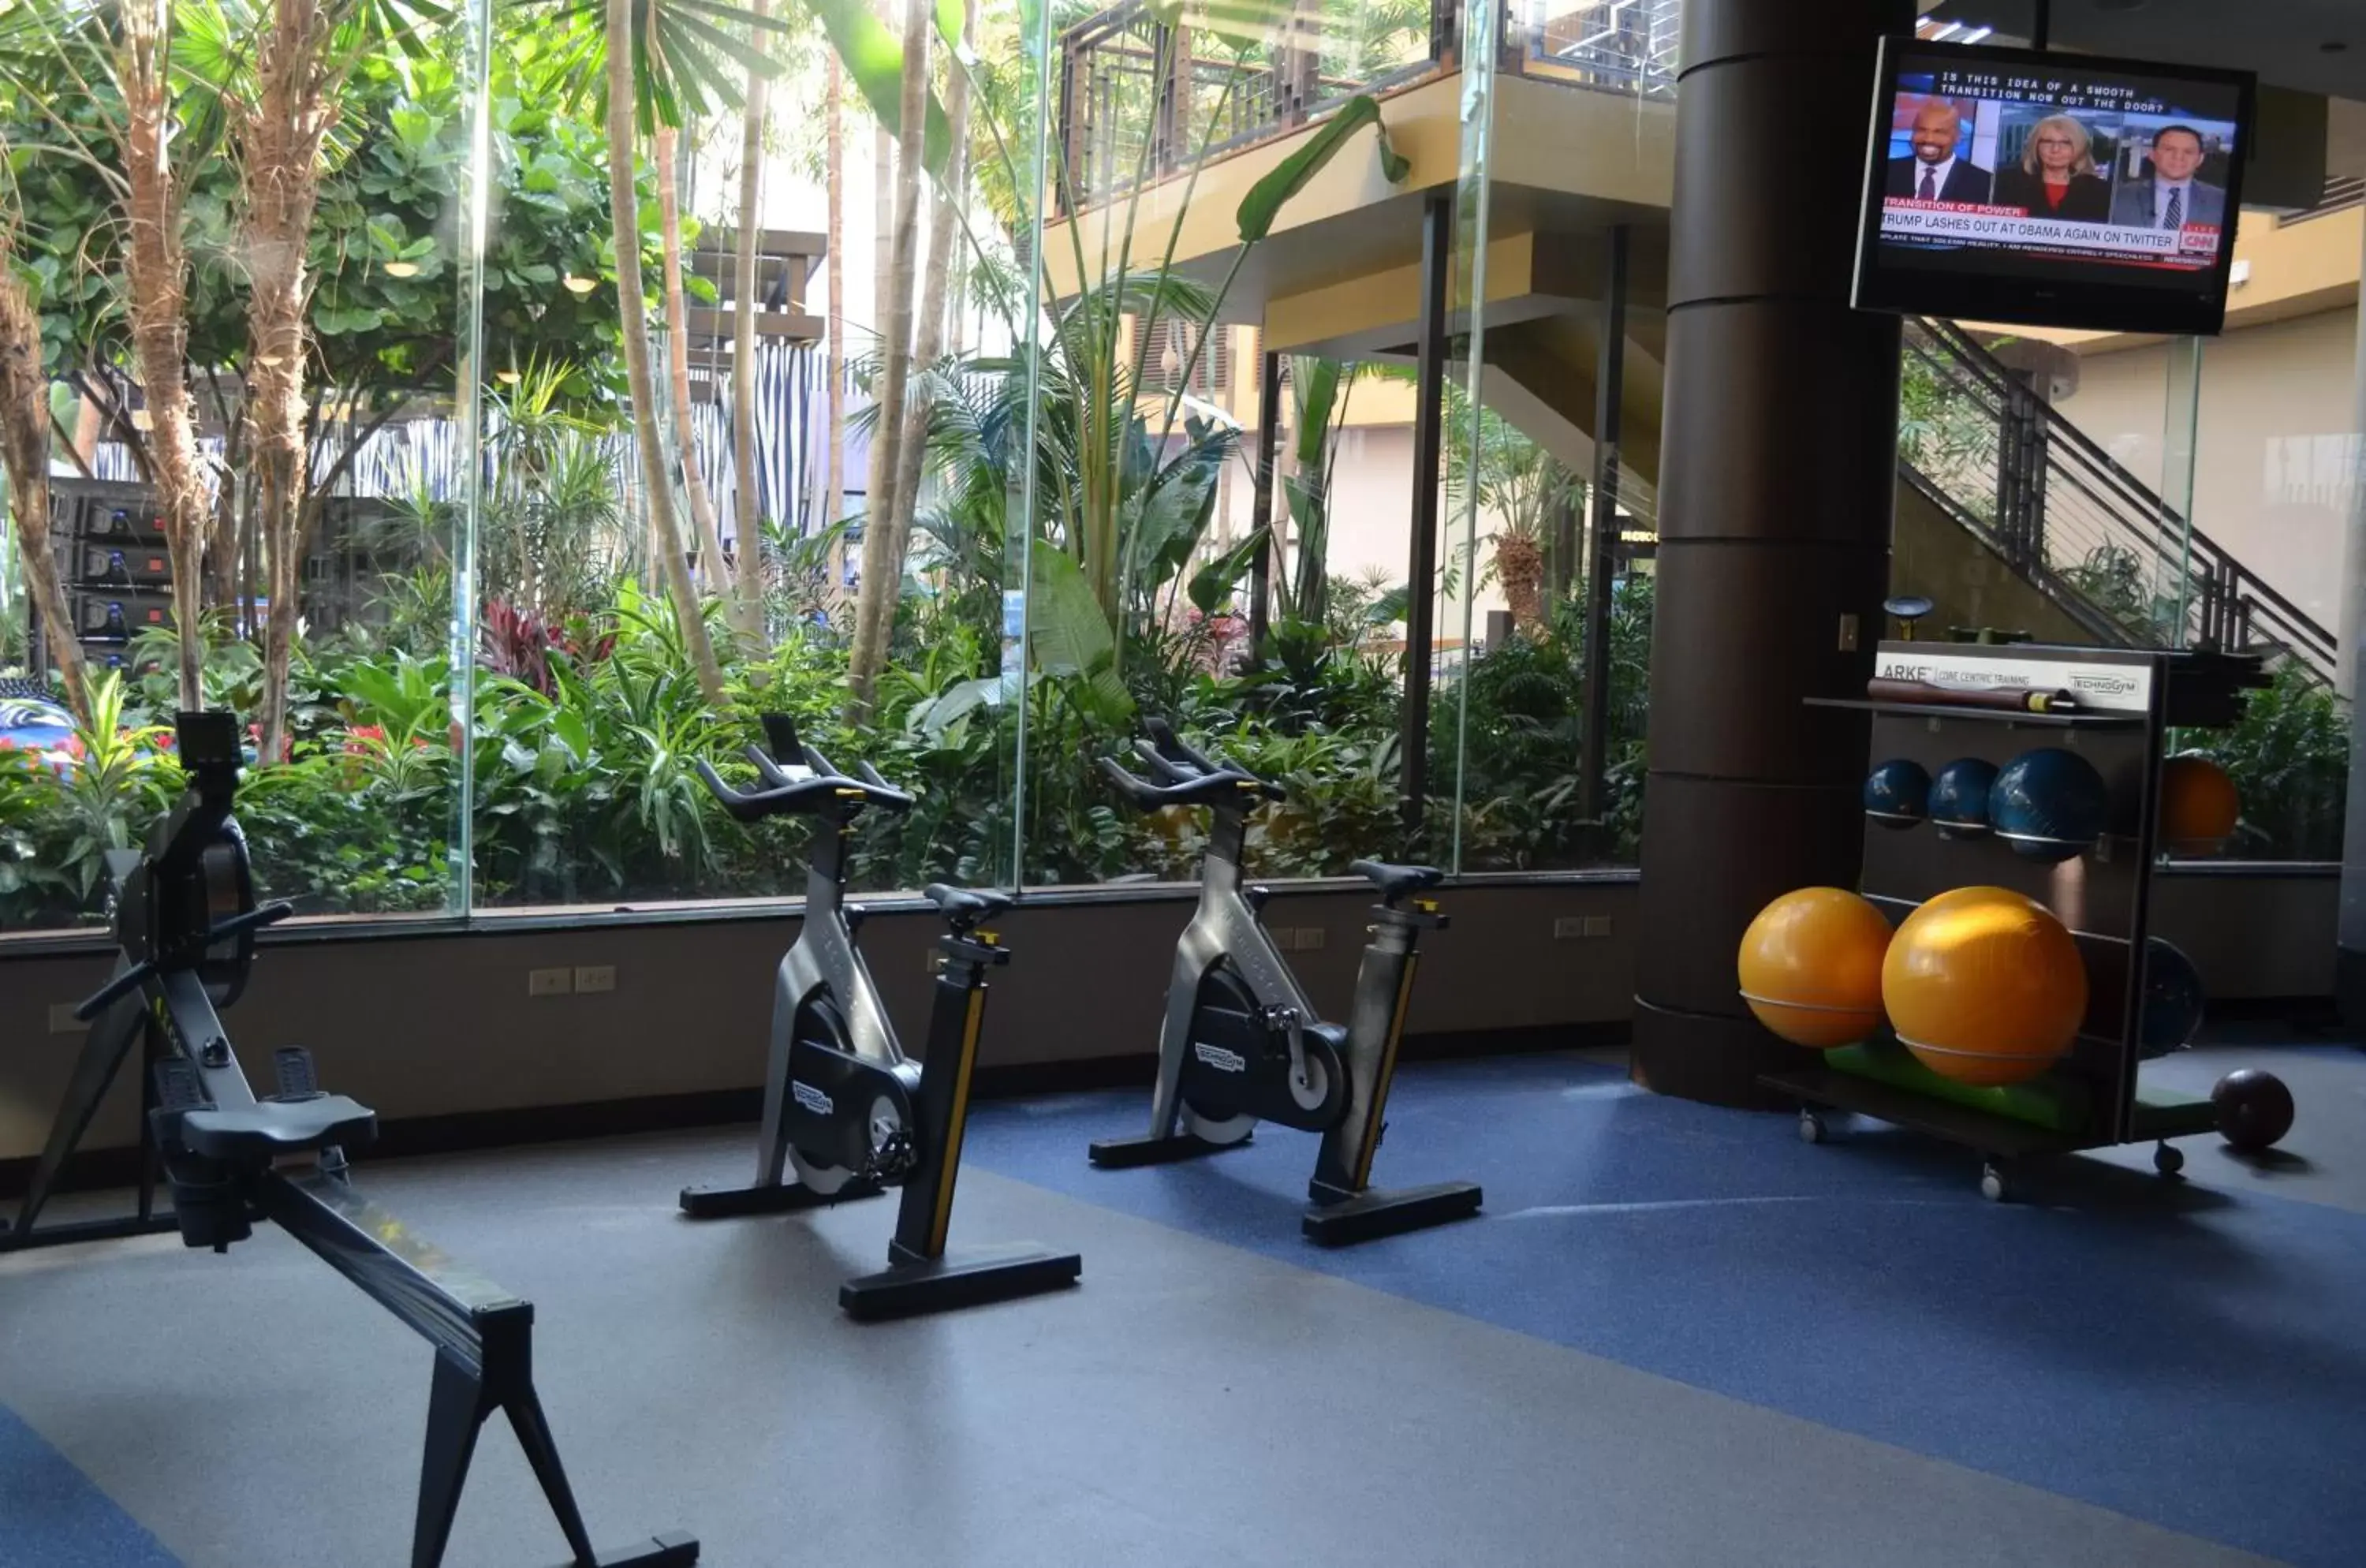 Fitness centre/facilities, Fitness Center/Facilities in Harrah's Resort Atlantic City Hotel & Casino